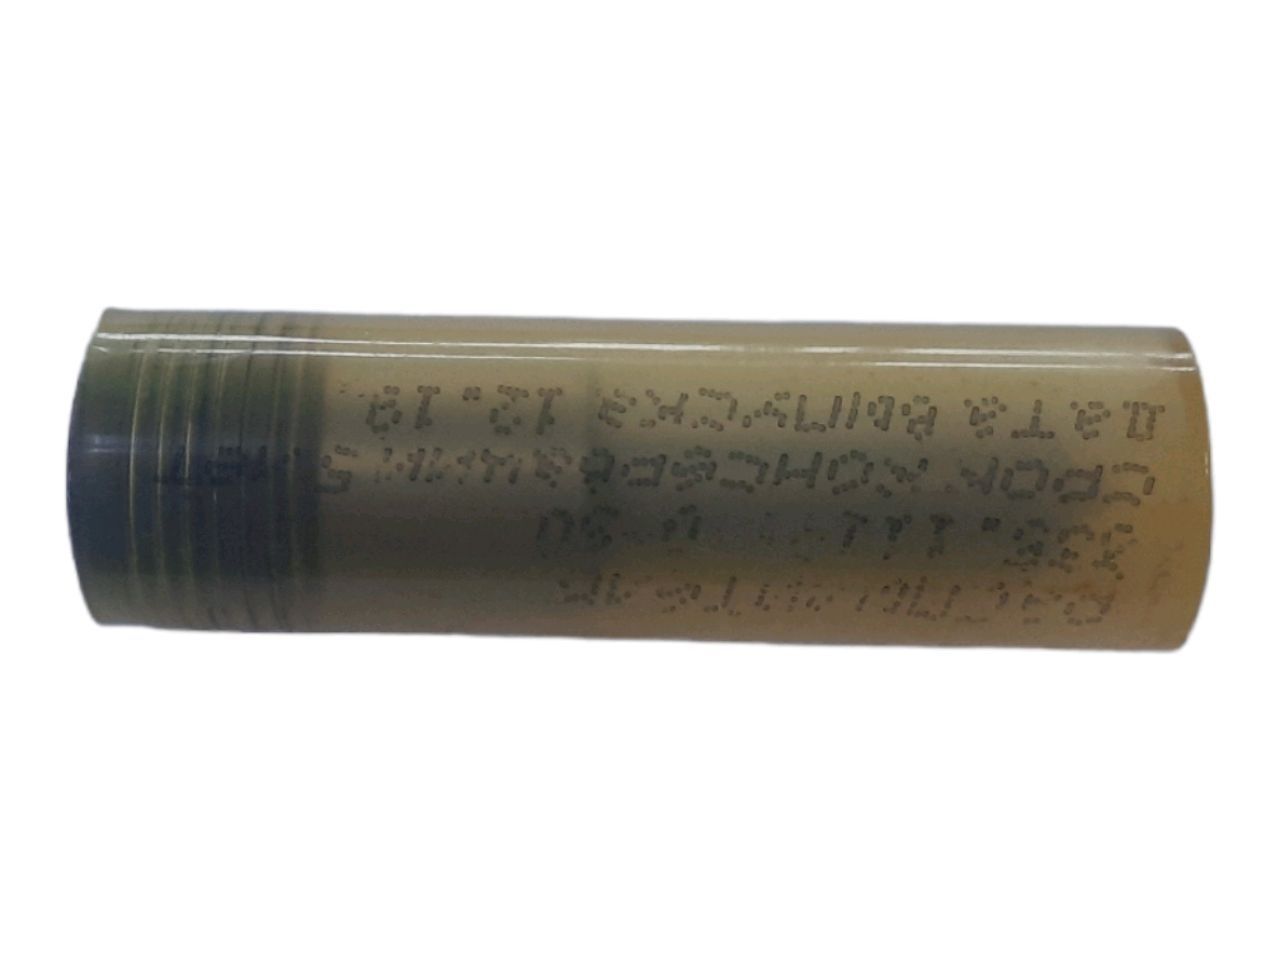 Duza injectorului IaMZ-238BE-2/7511 (IaZDA)